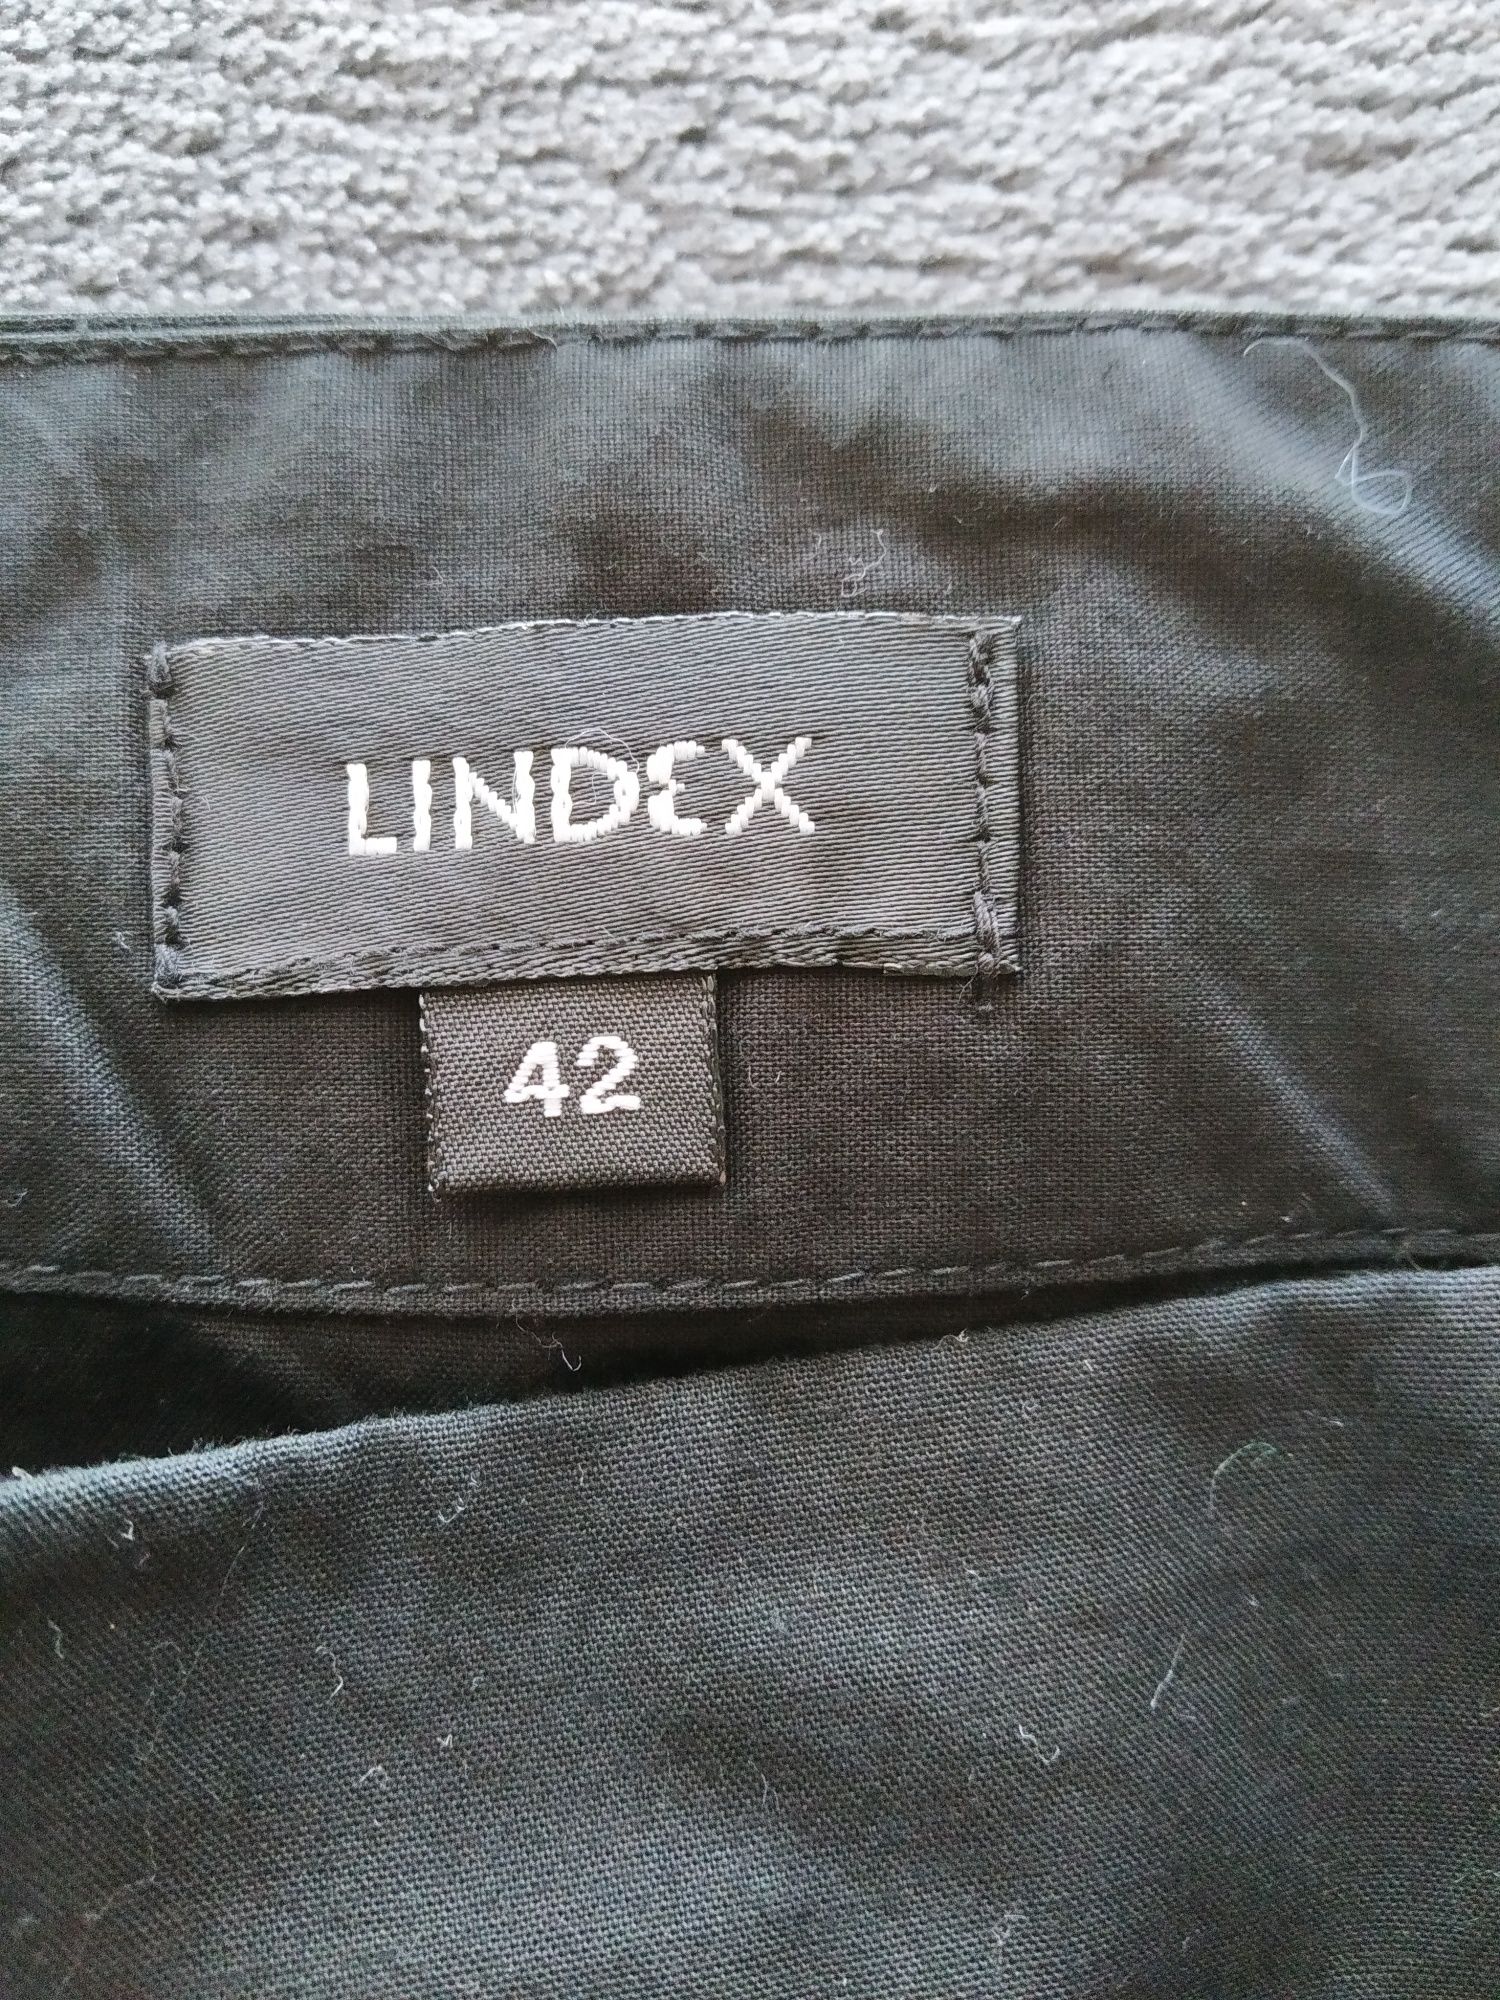 Spodniczka Lindex 42